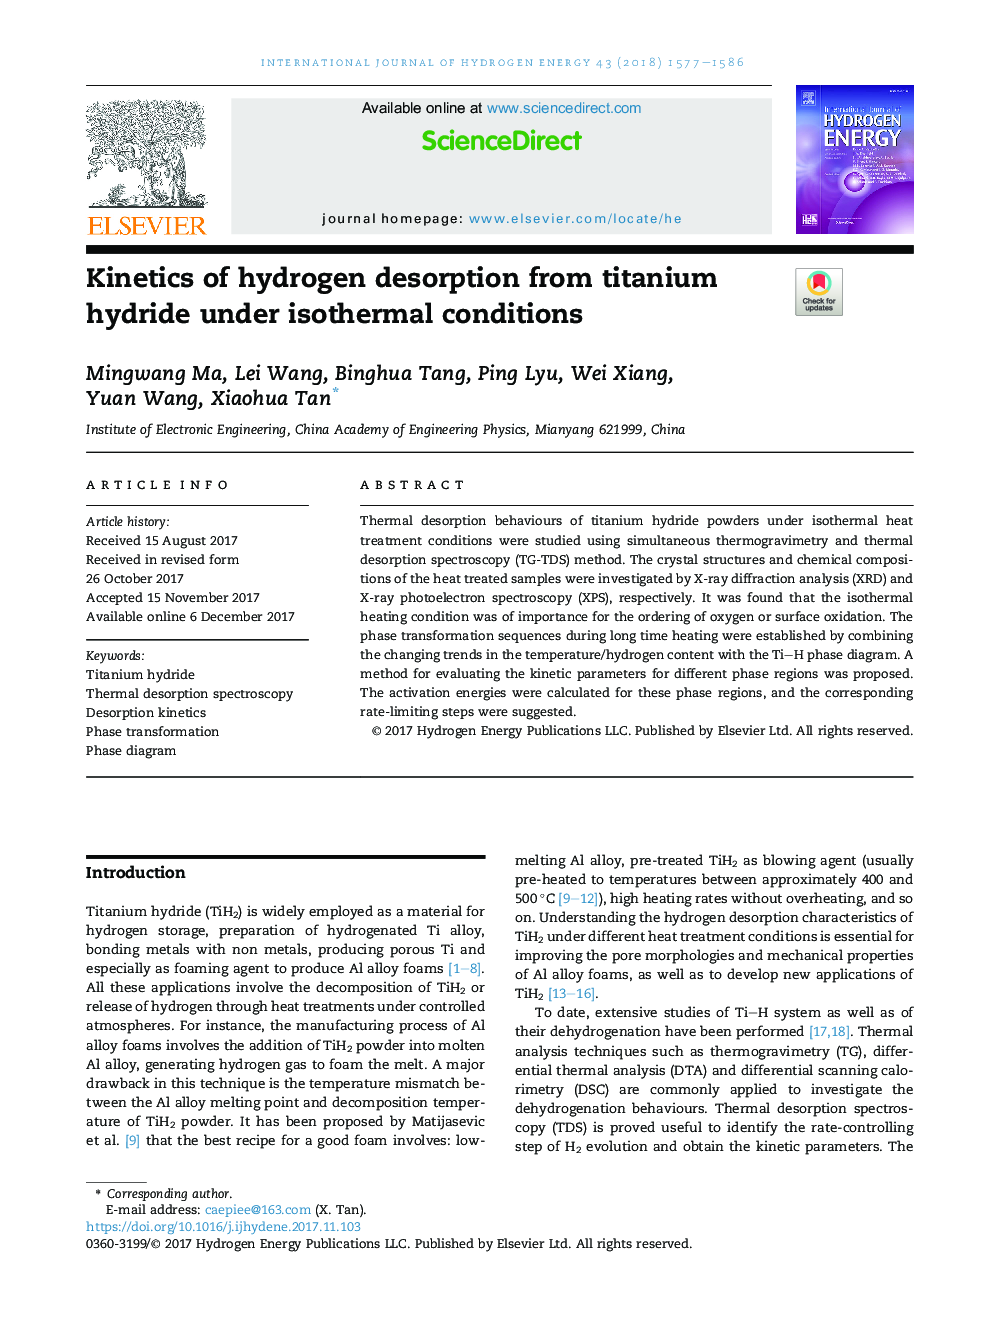 سینتیک جذب هیدروژن از هیدرید تیتانیوم تحت شرایط ایزوترمی 